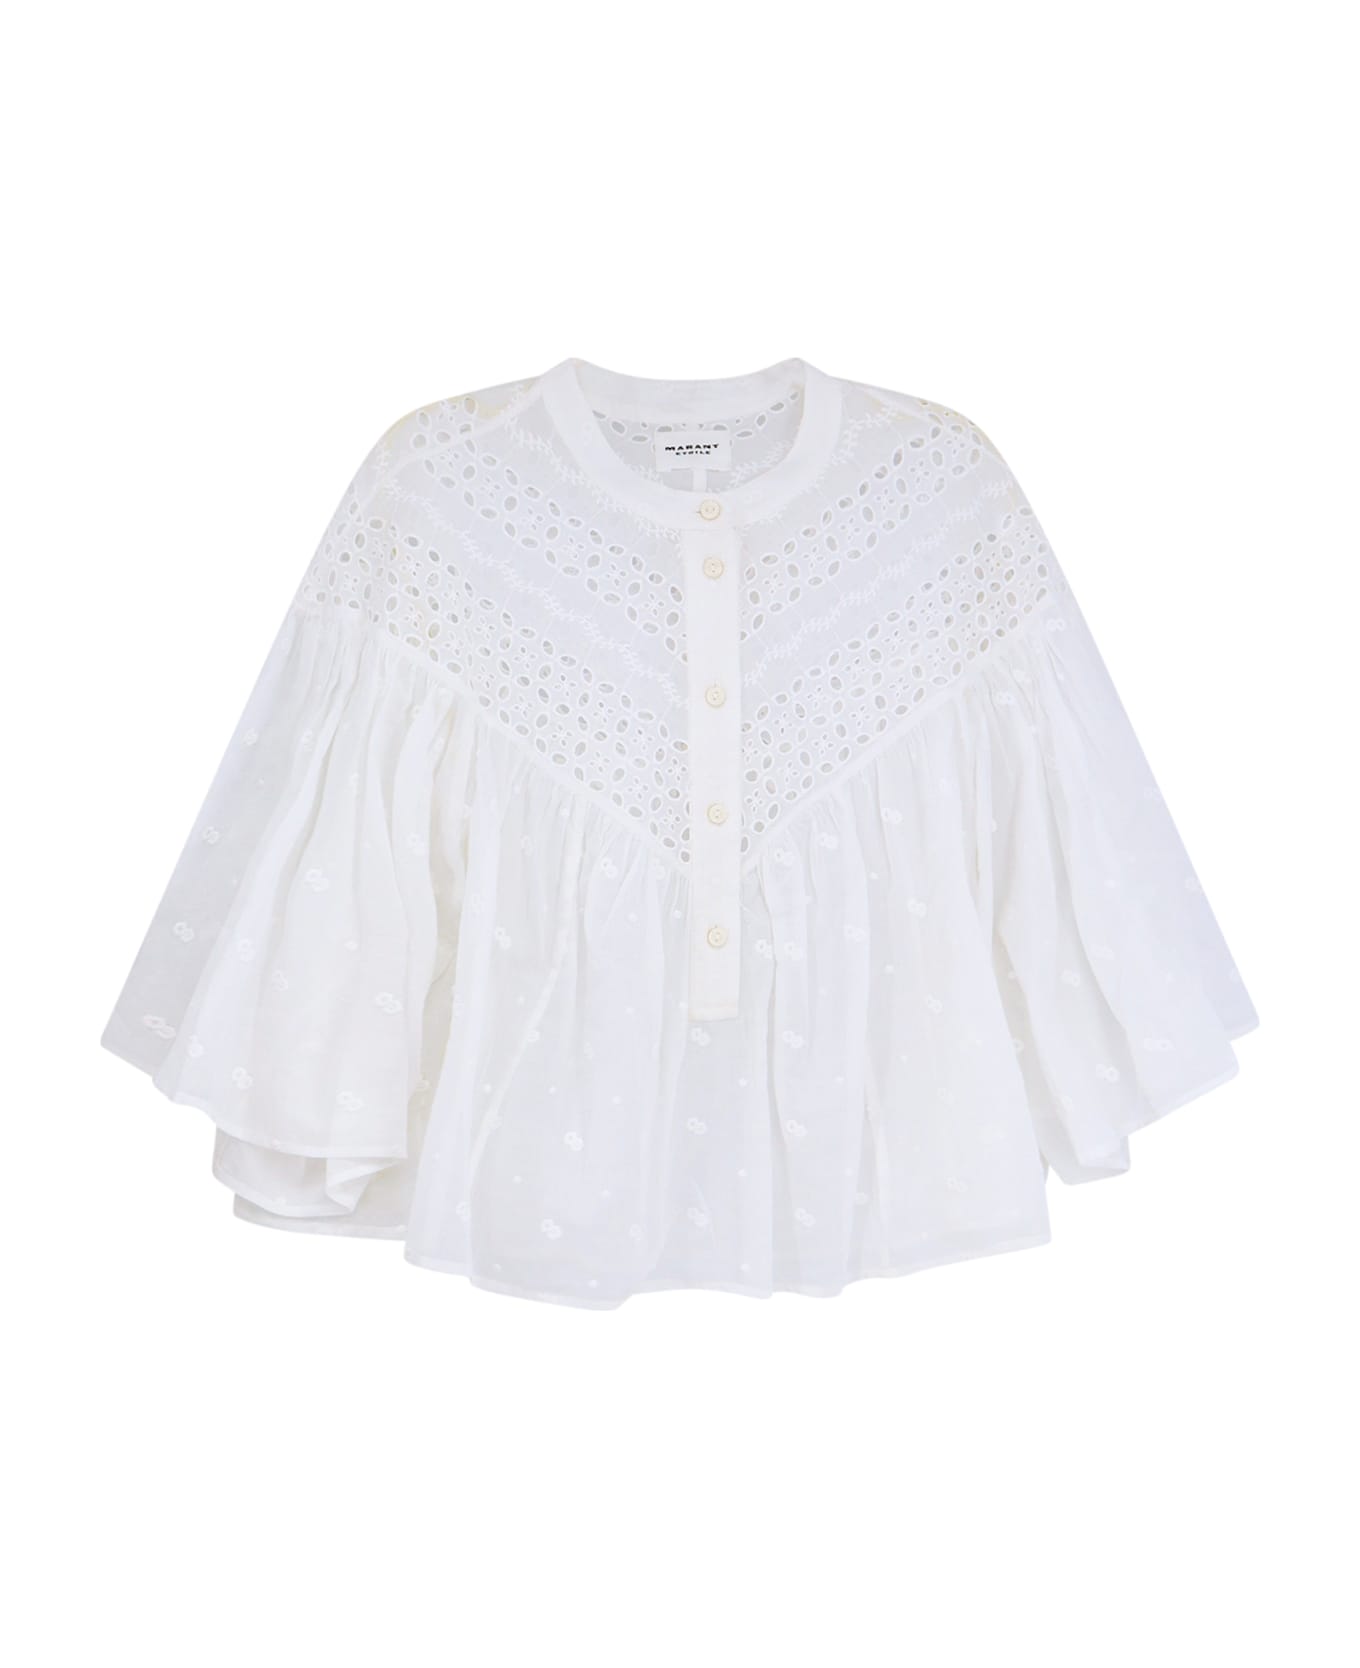 Marant Étoile Safi Shirt - White